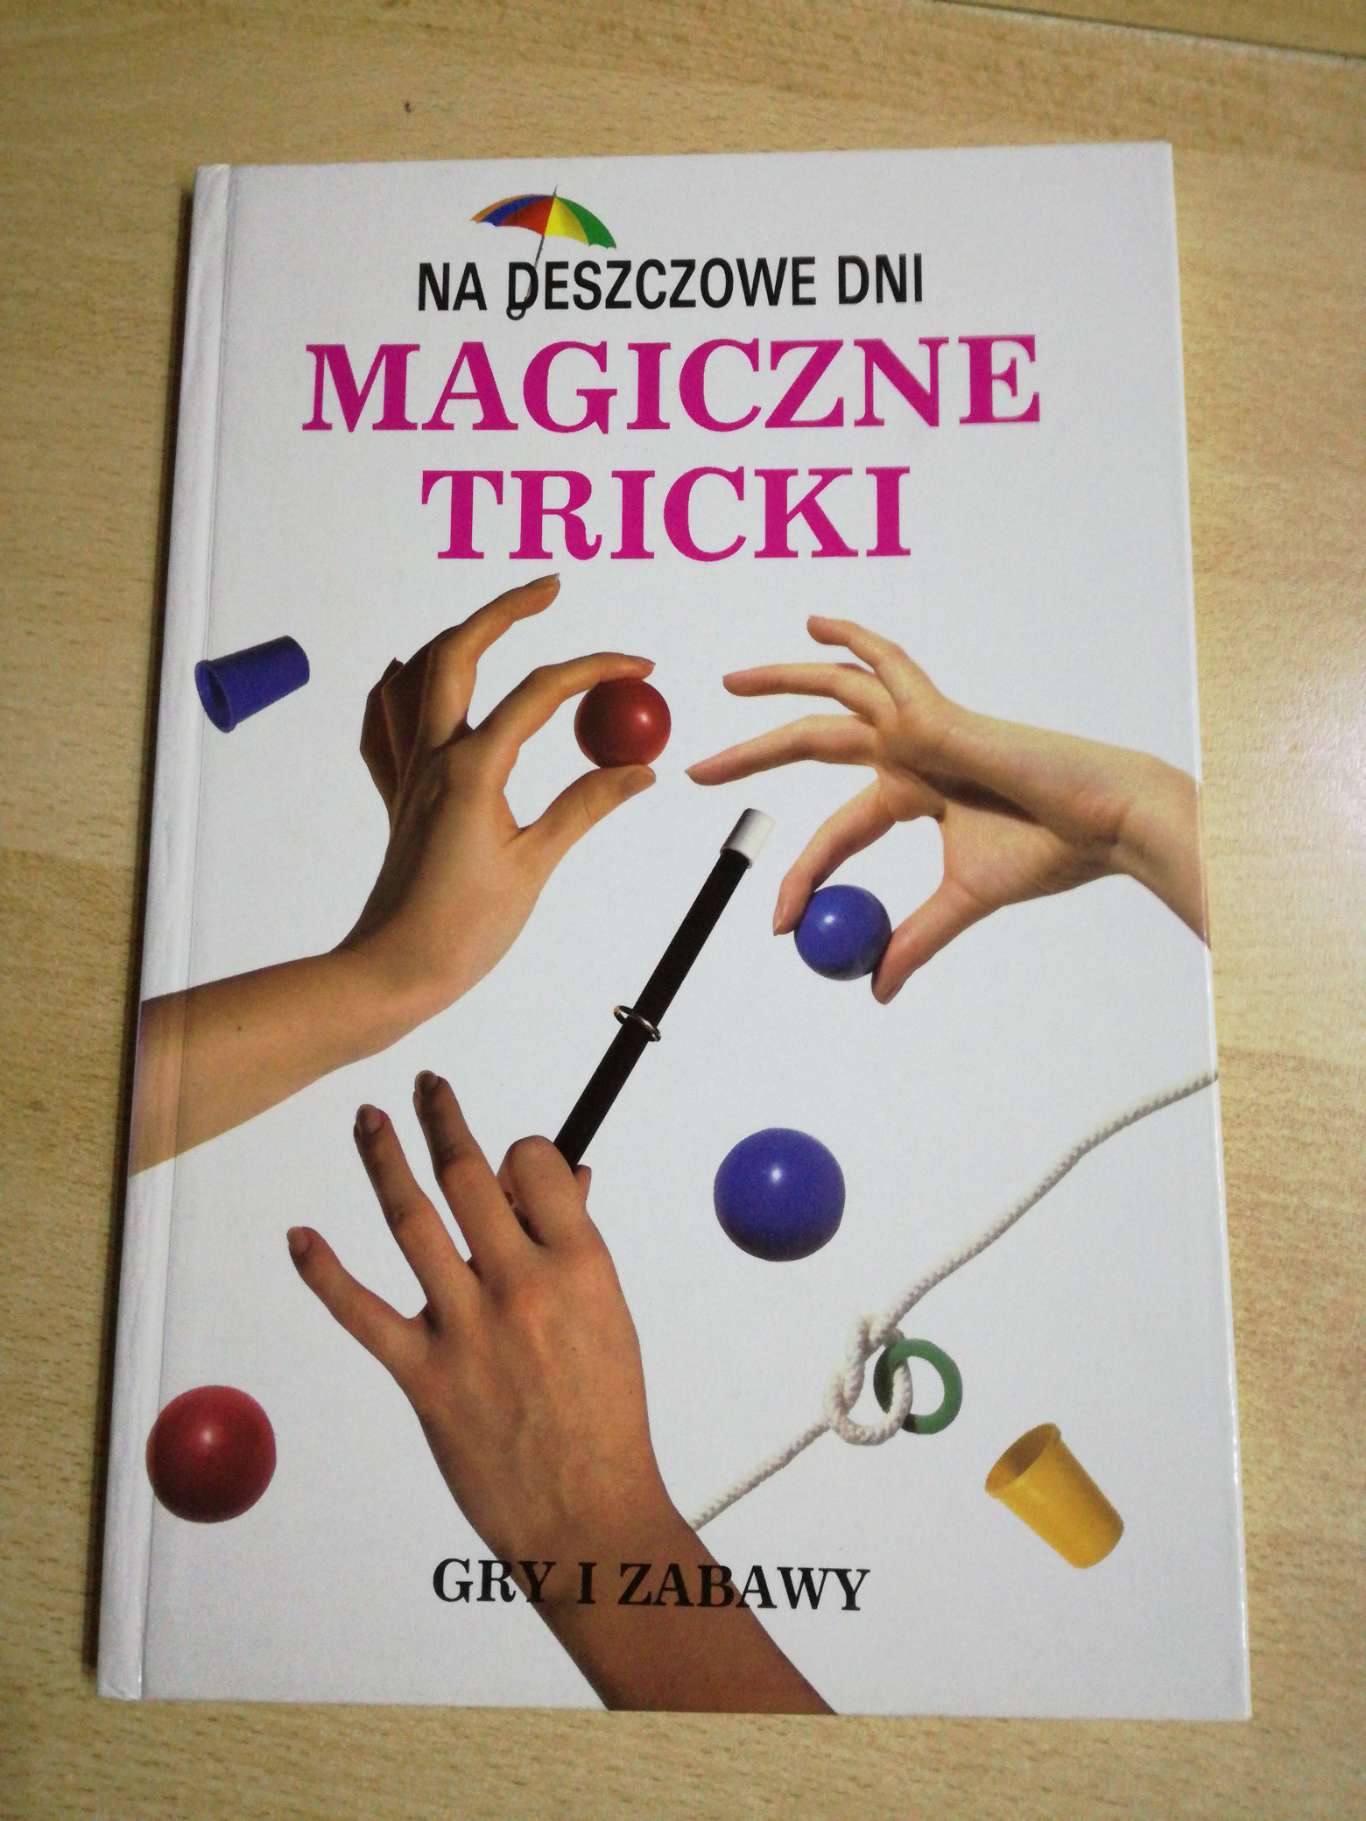 Książka  Magiczne Triki - Na deszczowe dni - Gry i zabawy.